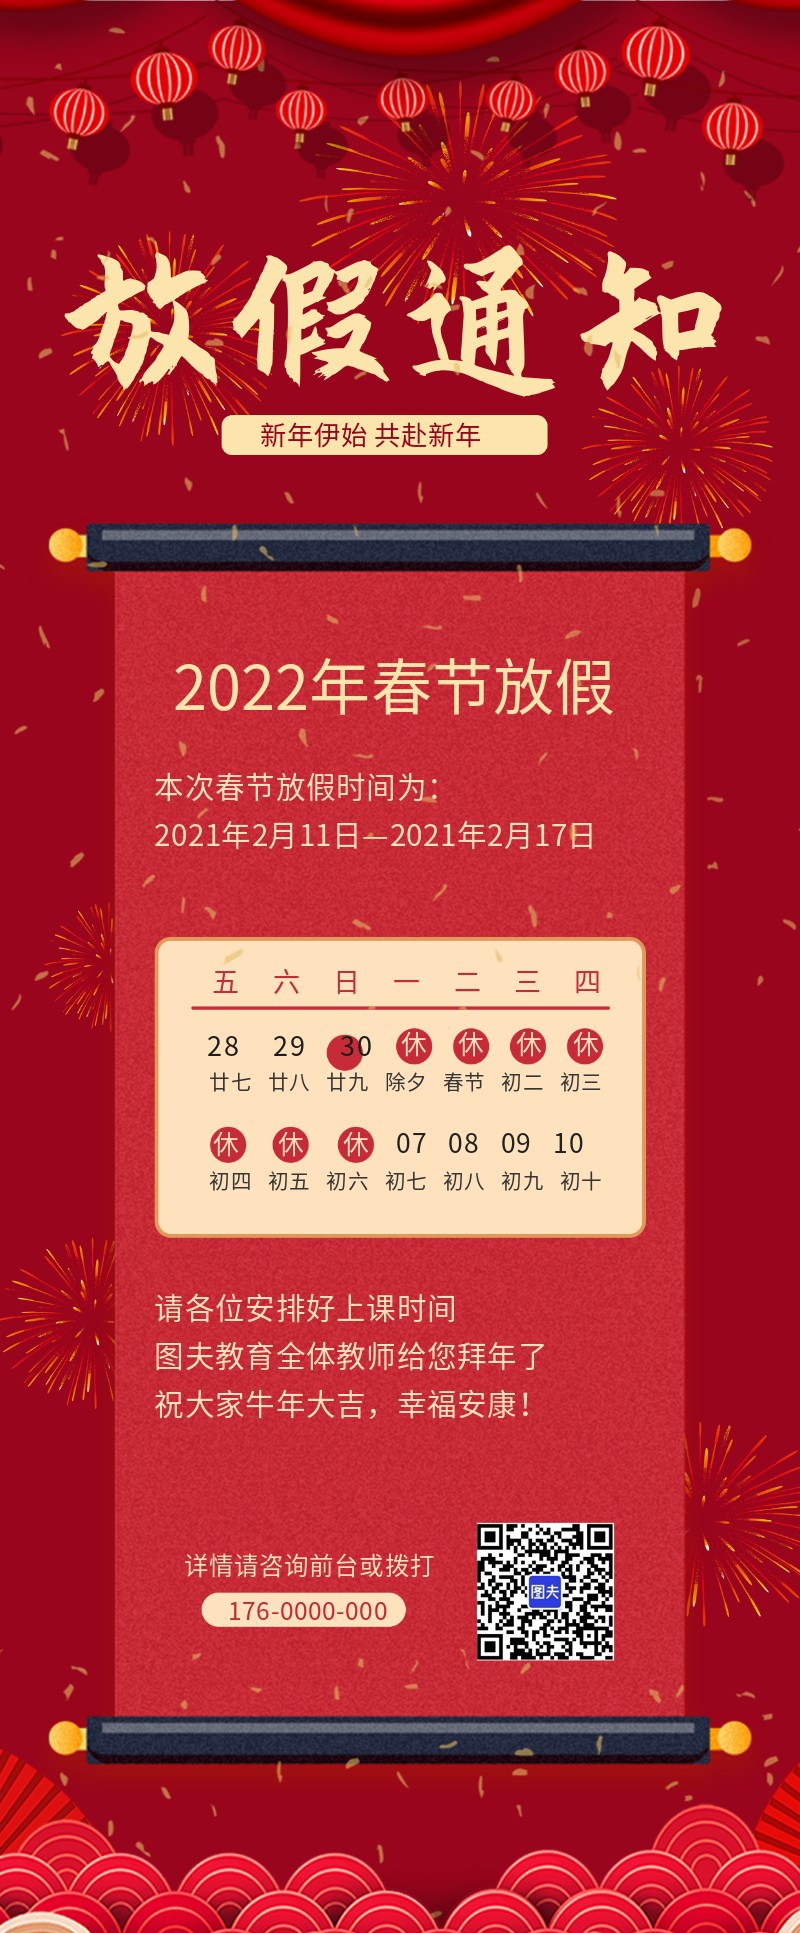 2022年 春节 虎年 放假通知